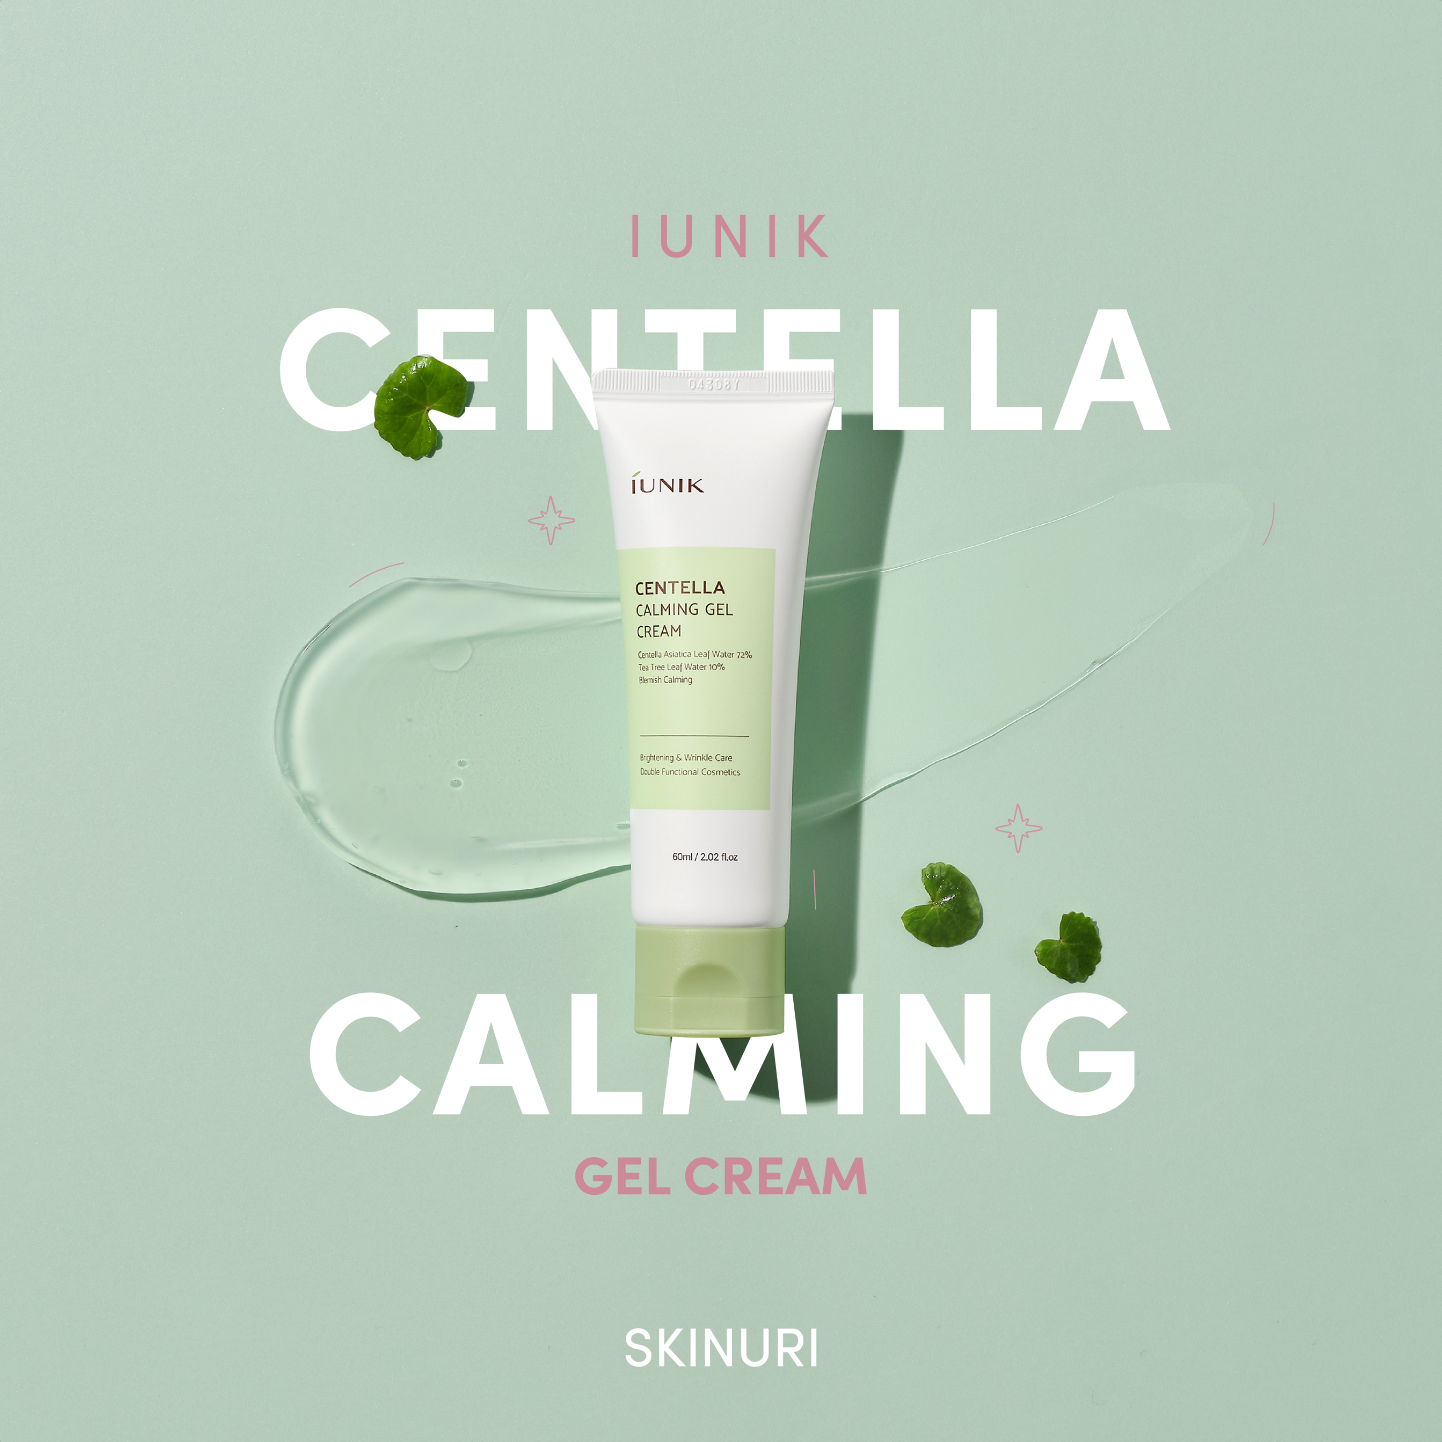 IUNIK Centella Calming Gel Cream